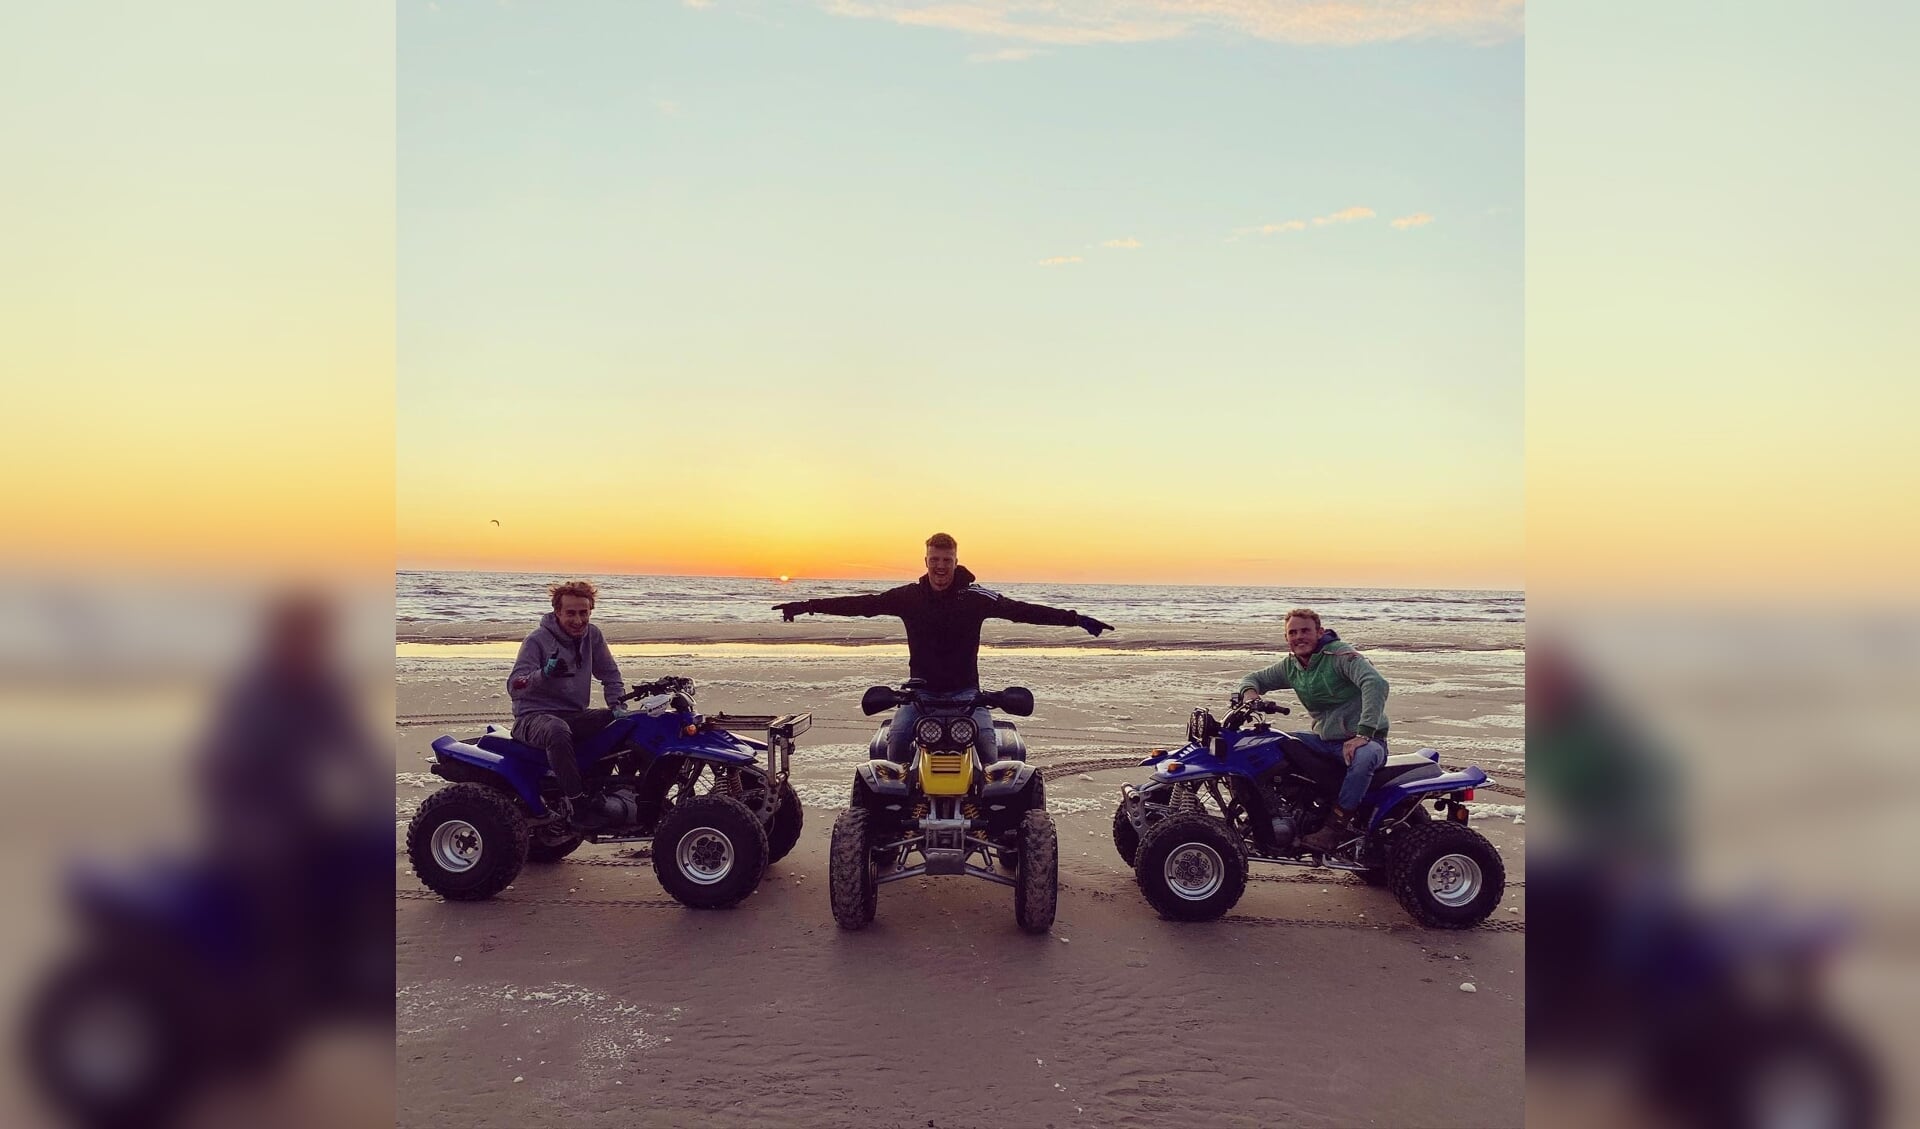 Timo met zijn vrienden op het strand poserend met hun quads